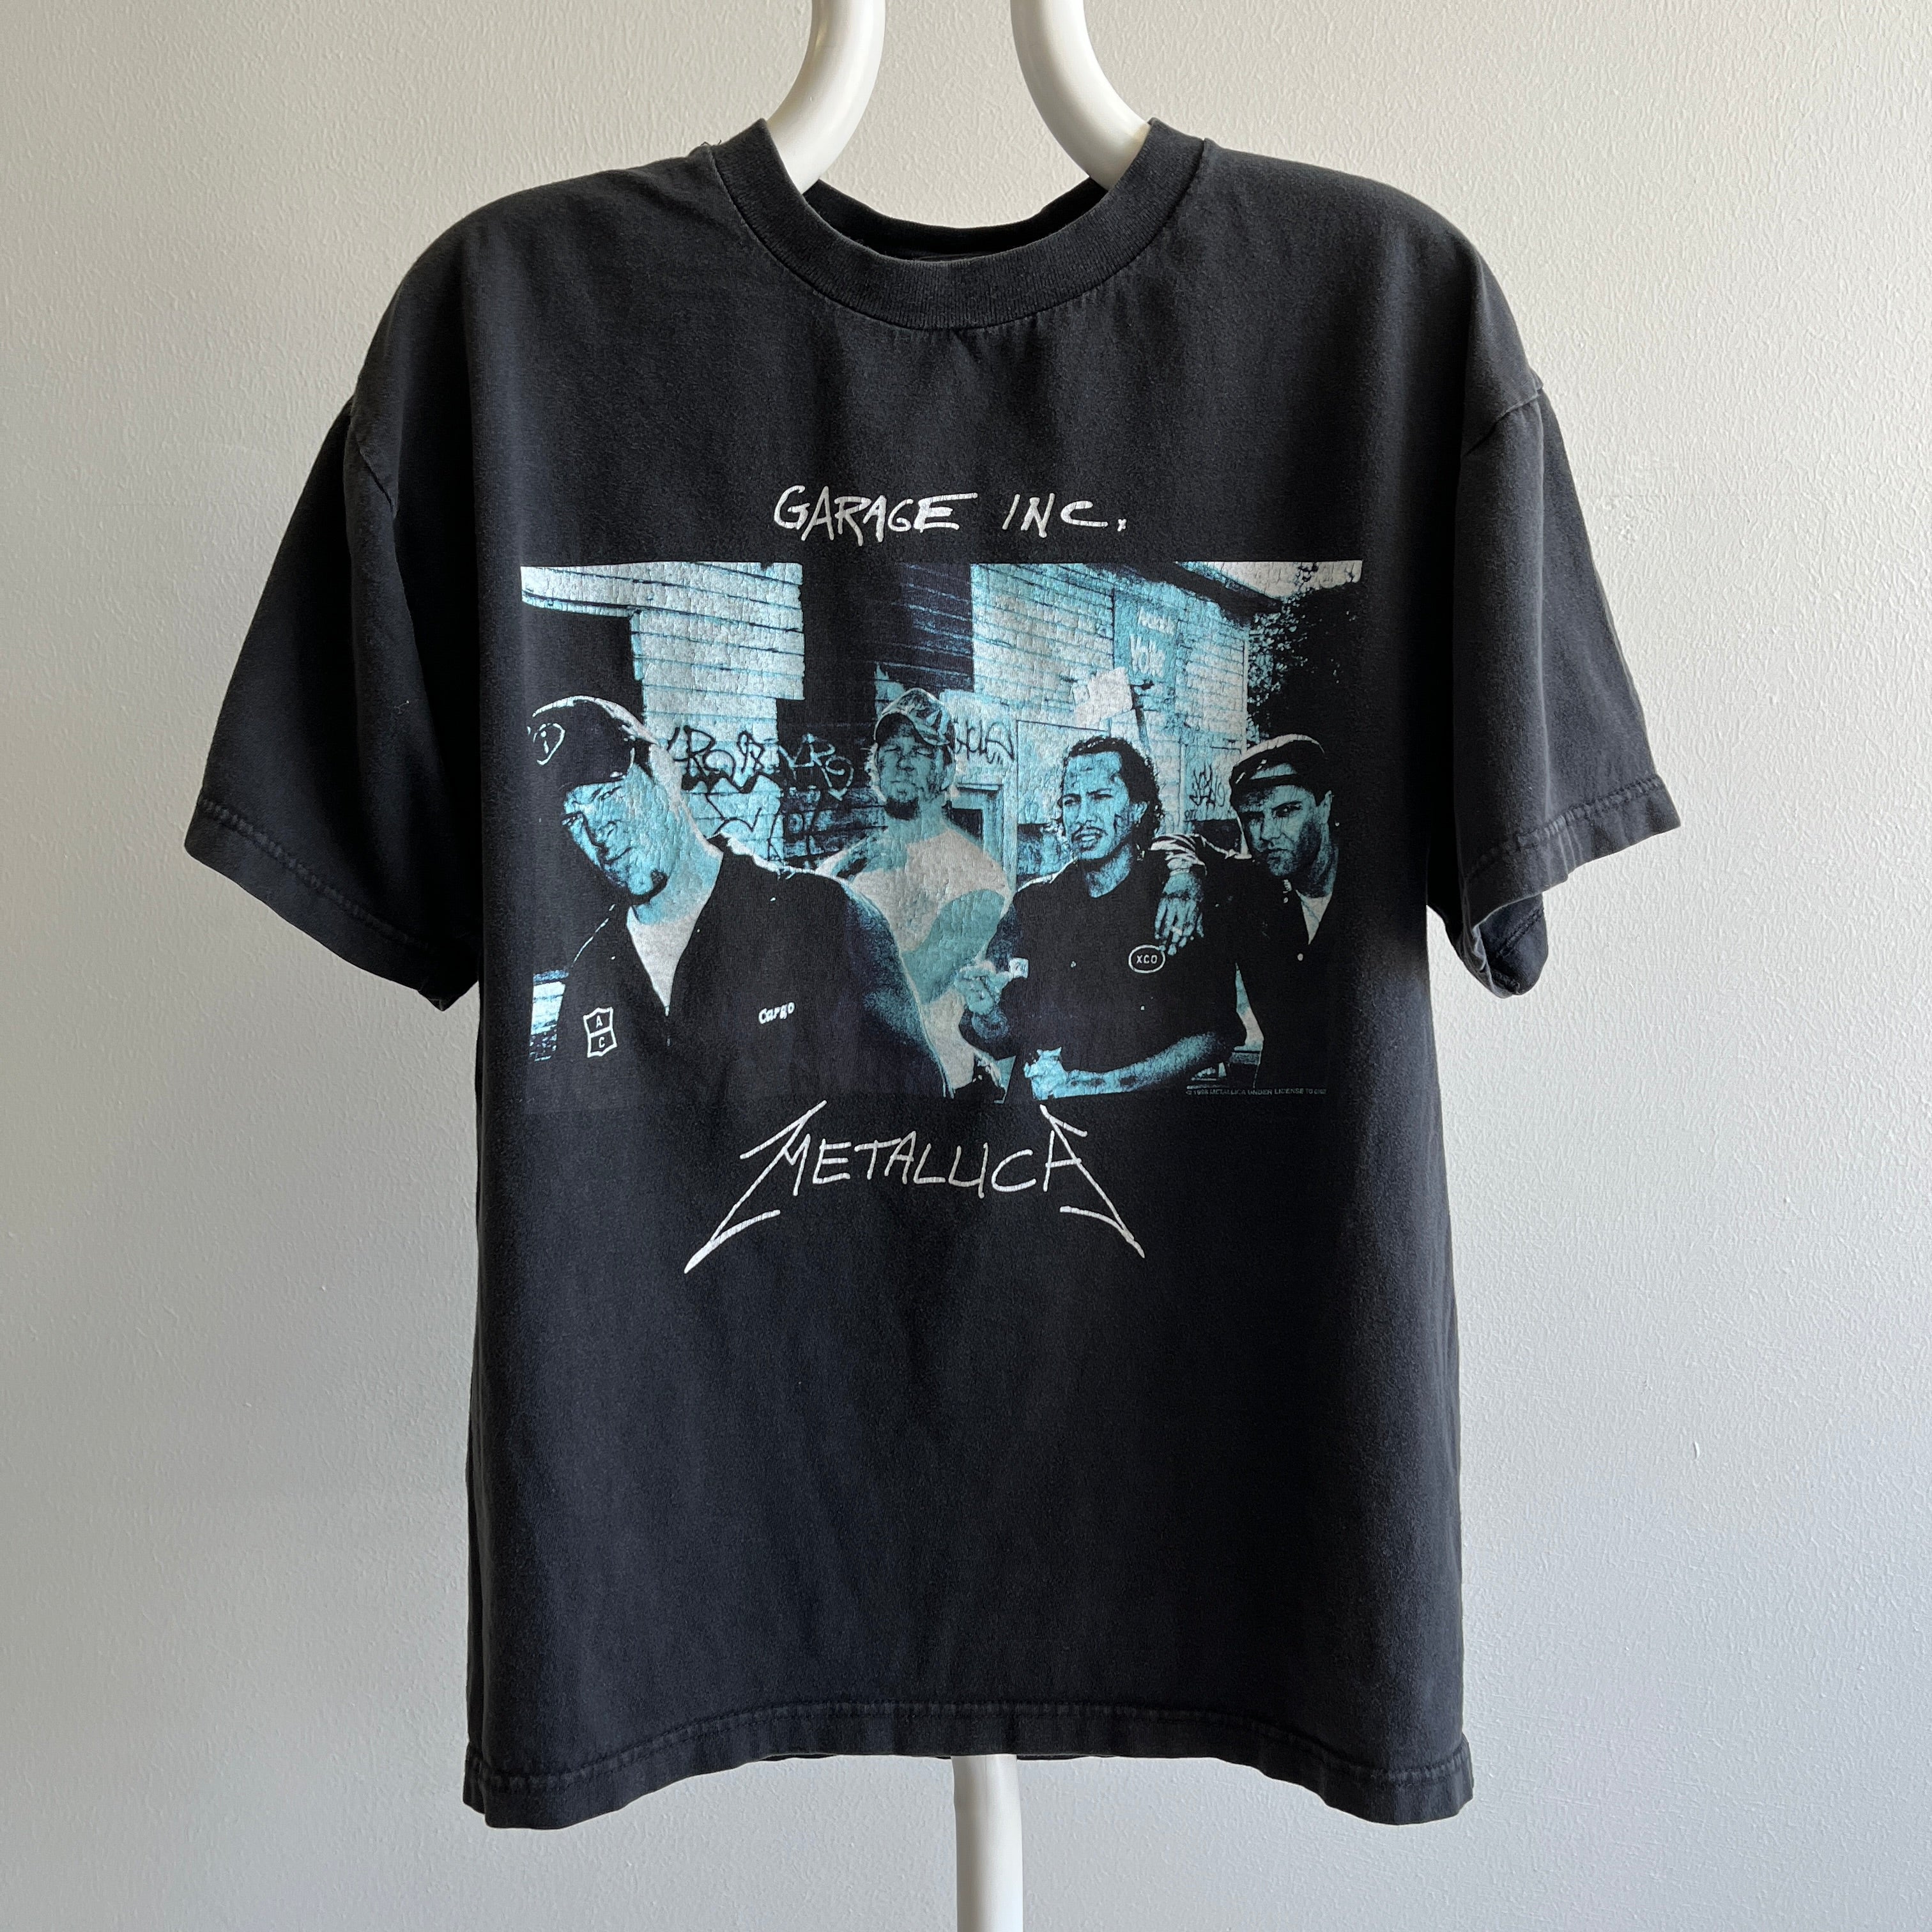 Réimpression du t-shirt Metallica 1998 par Giant